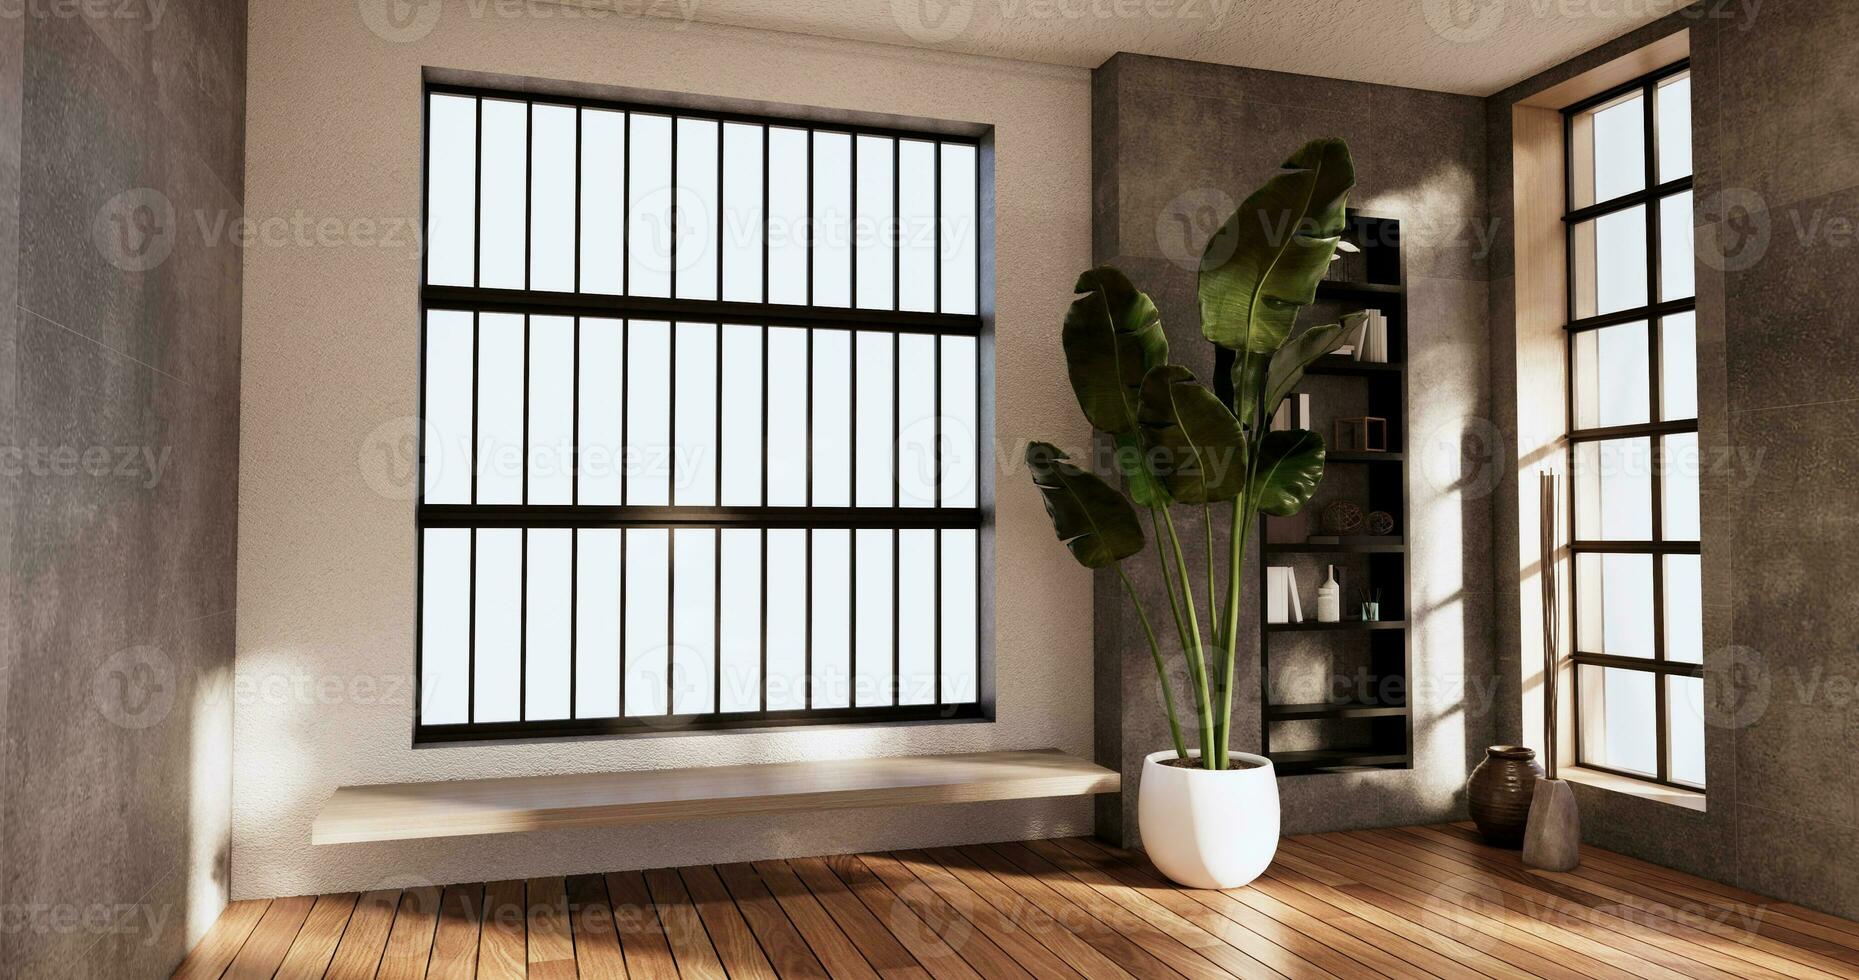 limpieza vacío habitación interior japandi wabi sabi estilo.3d representación foto